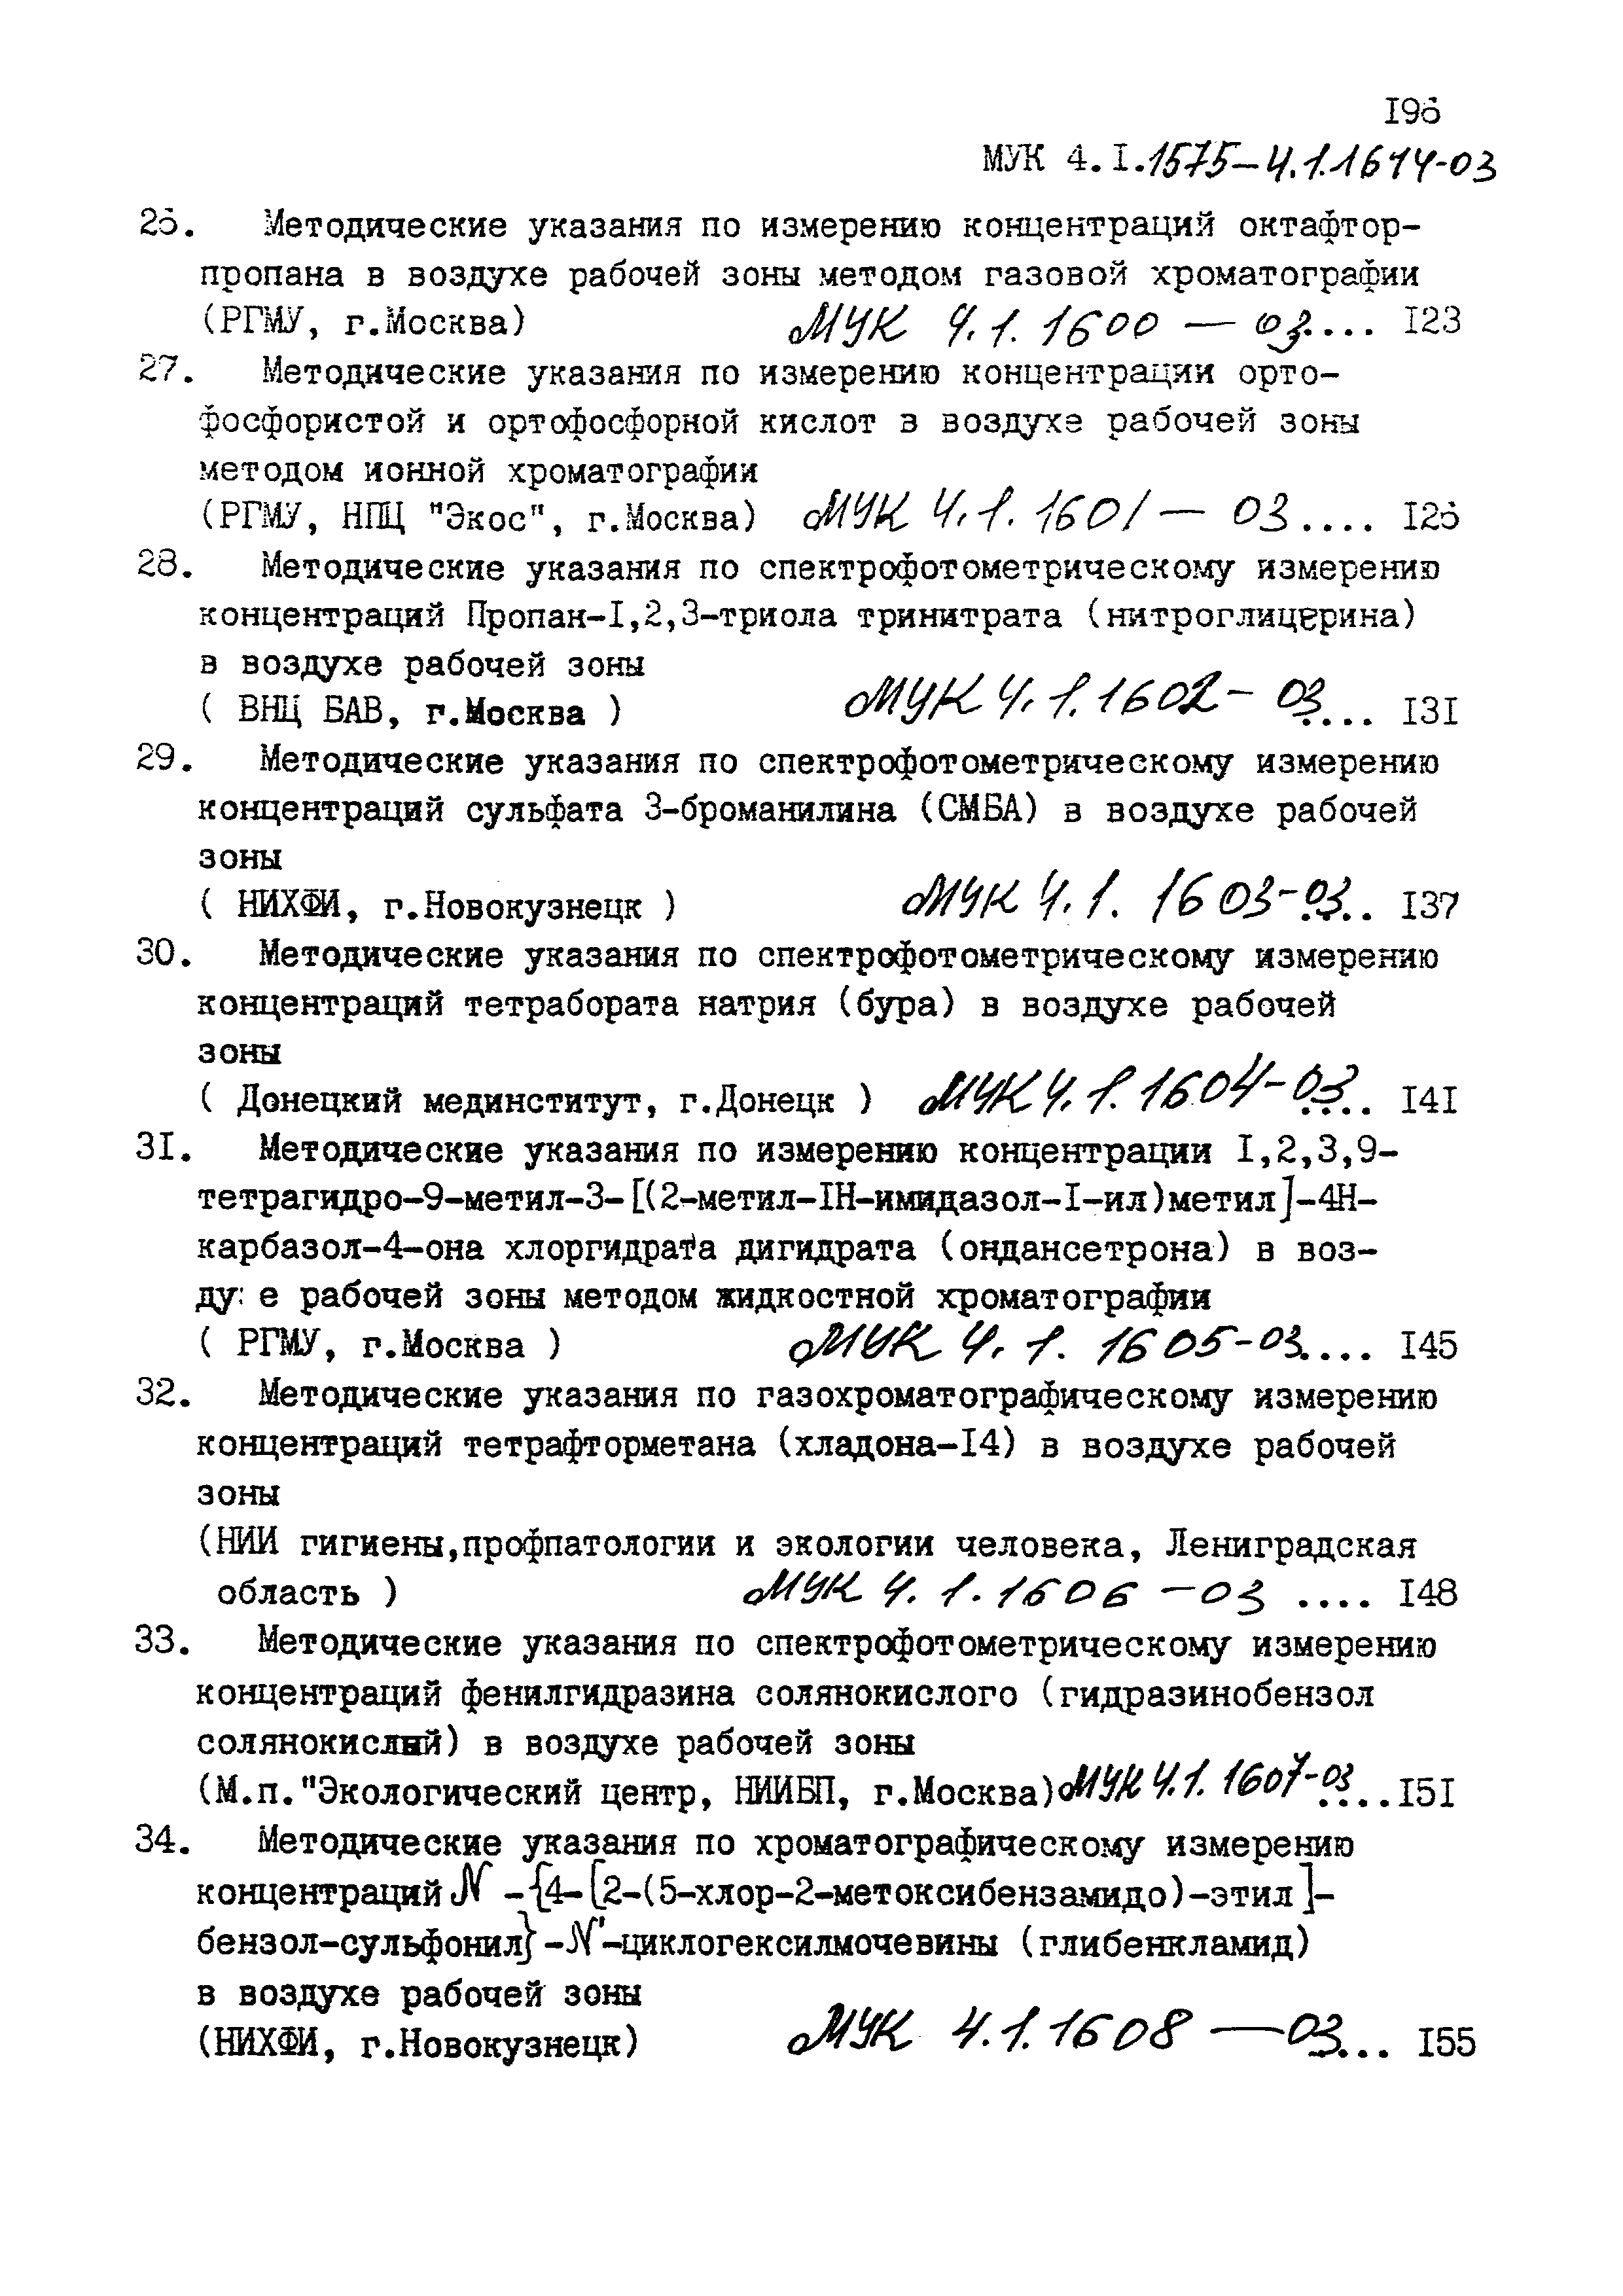 МУК 4.1.1581-03